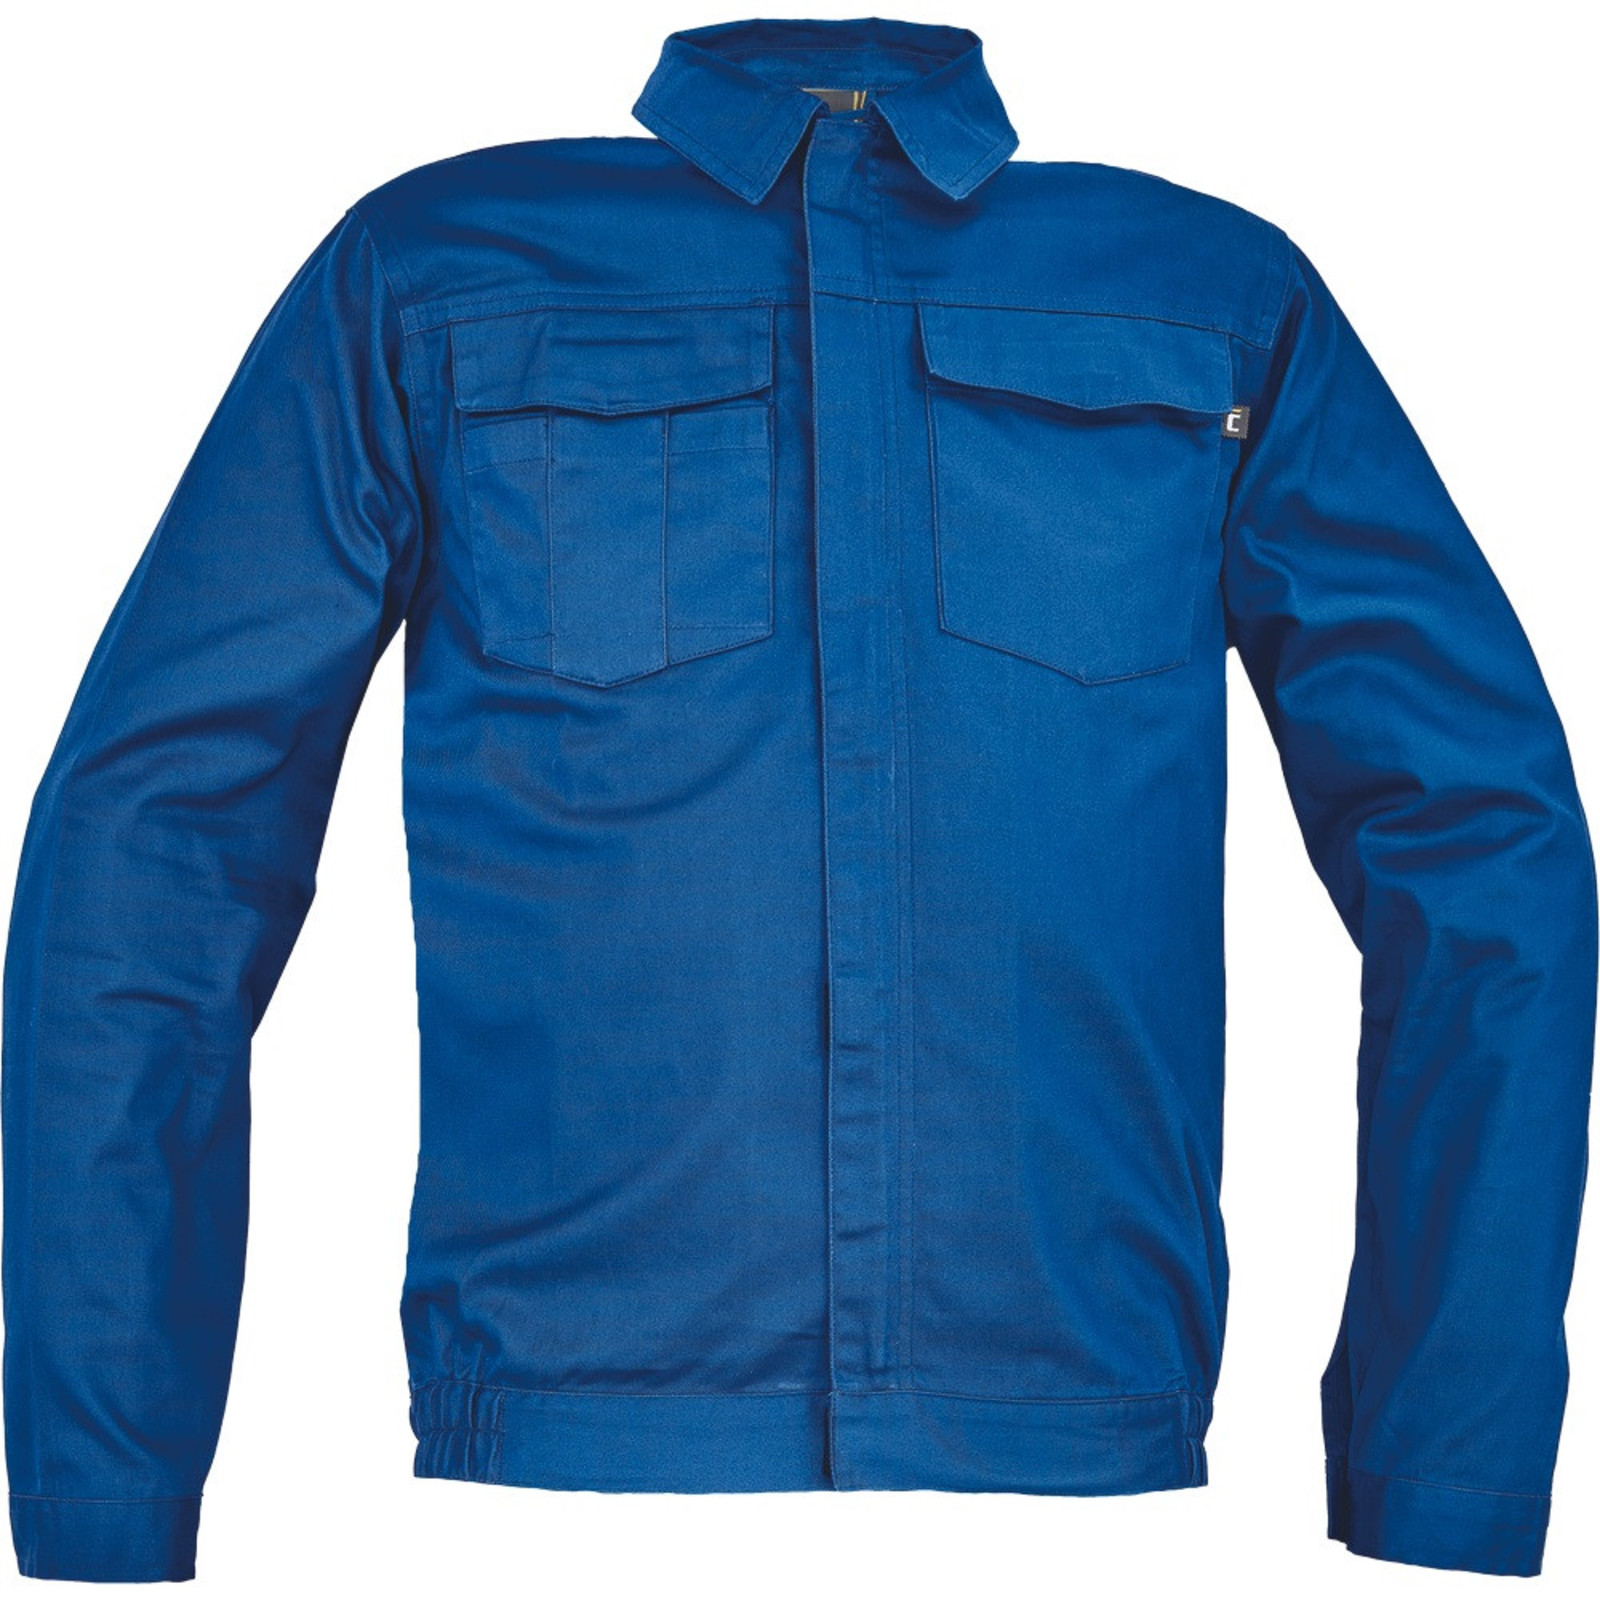 Pánska ľahká pracovná bunda Cerva Ciudades Basic Zaragoza - veľkosť: 50, farba: royal blue